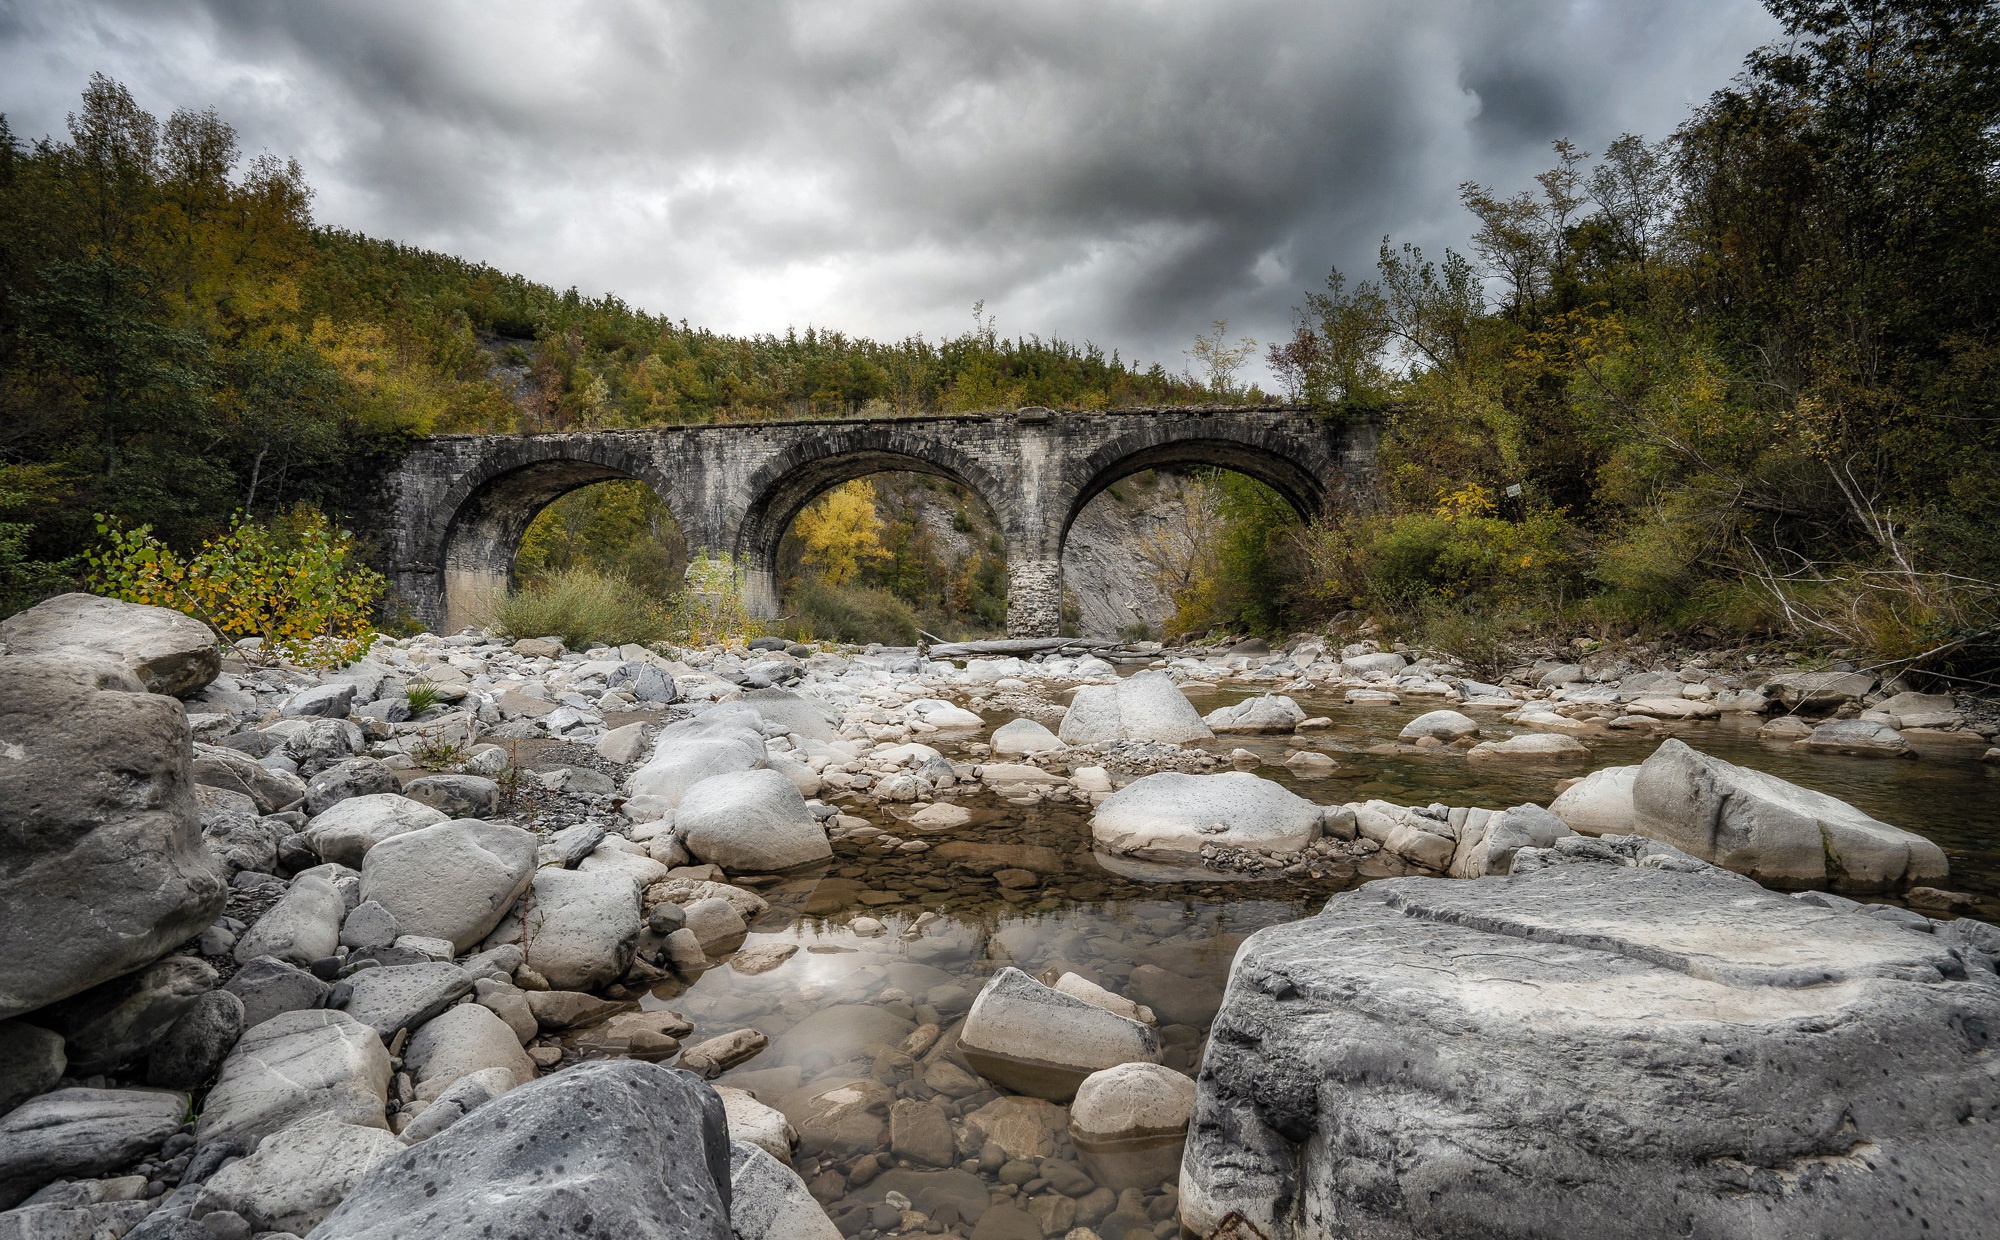 General 2000x1240 Italy bridge stones outdoors Emilia-Romagna (Italy)